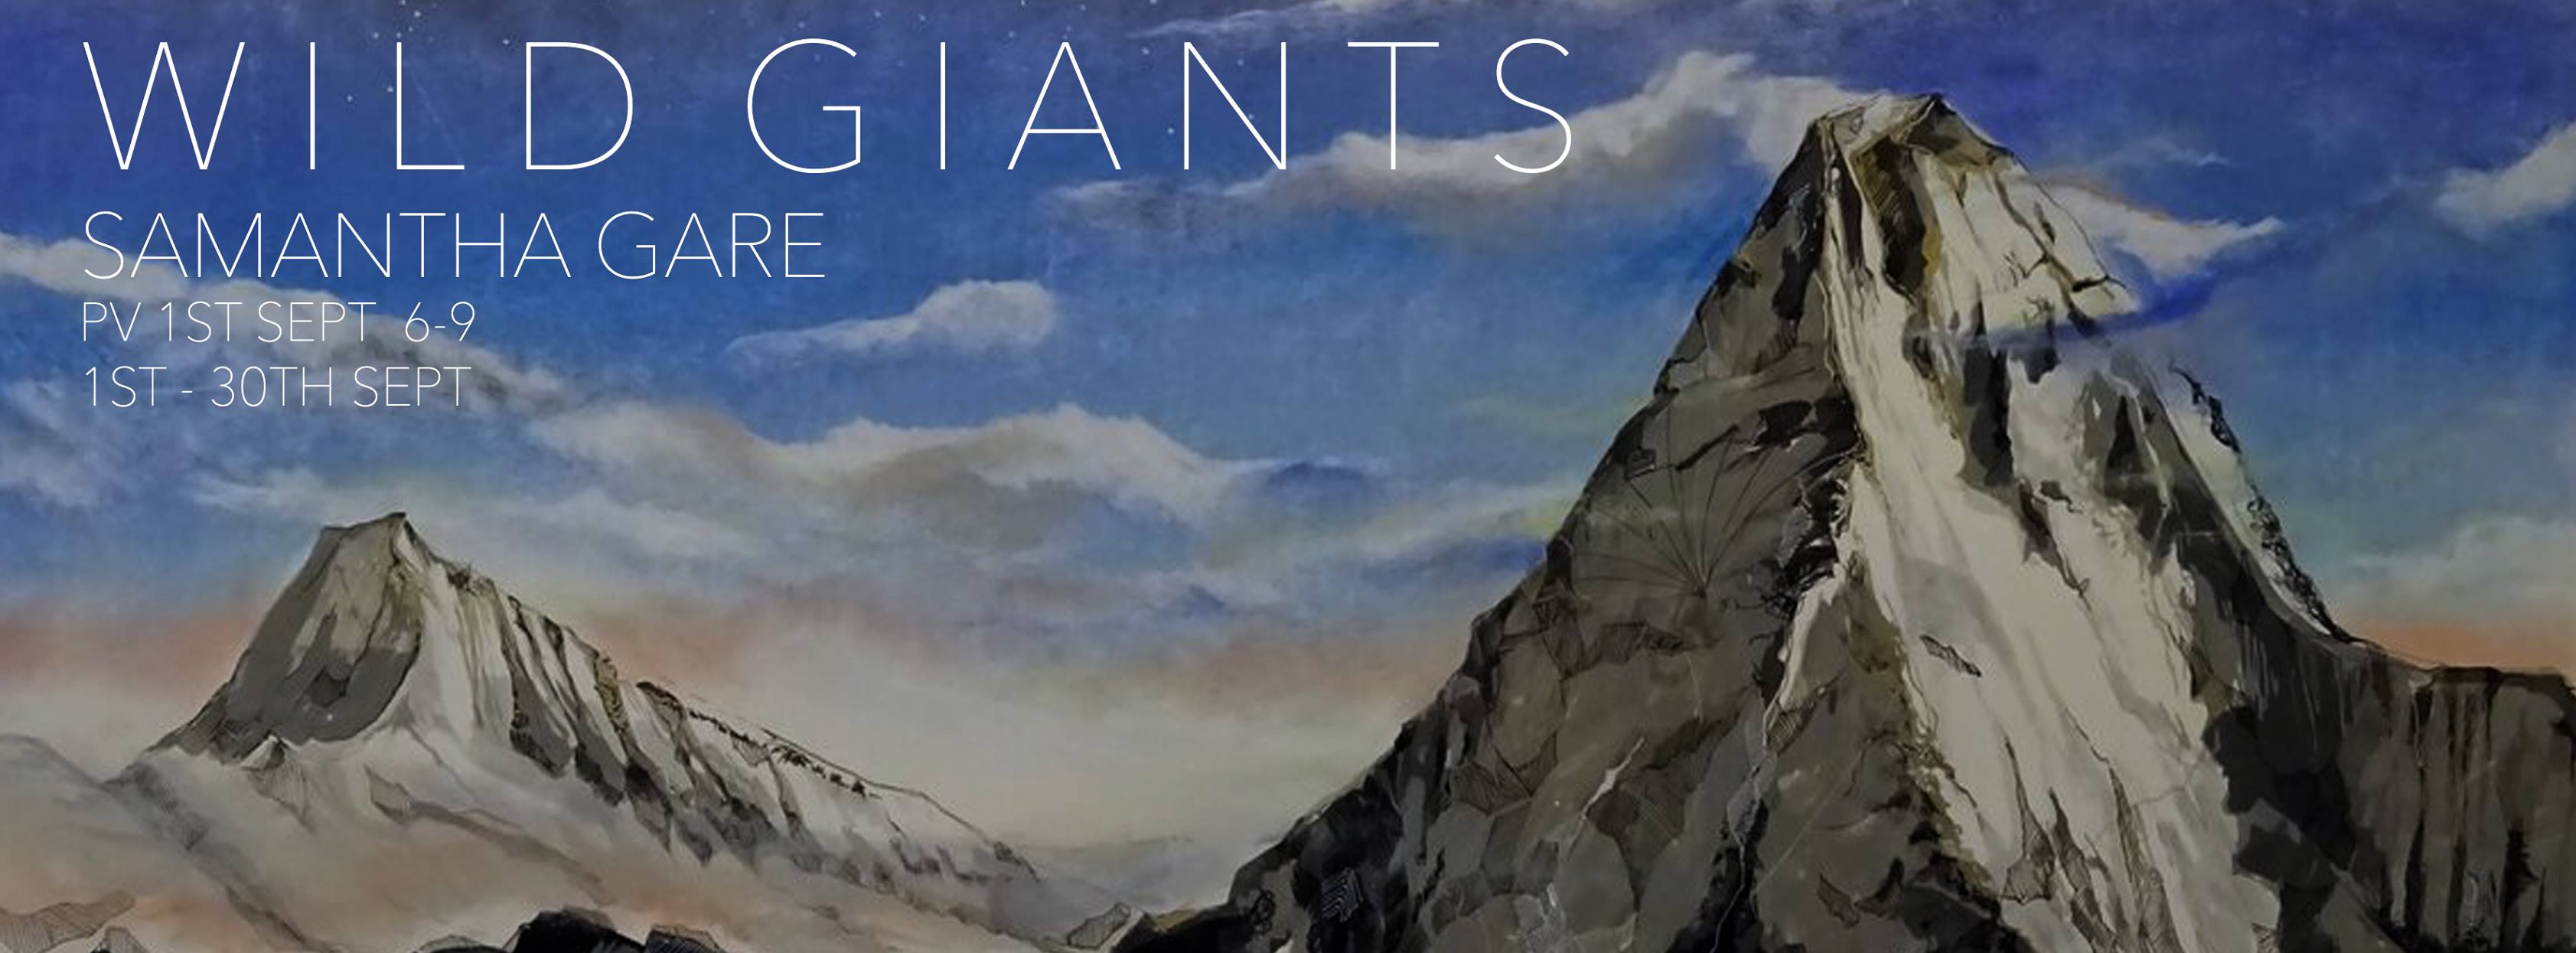 'Wild Giants', Samantha Gare